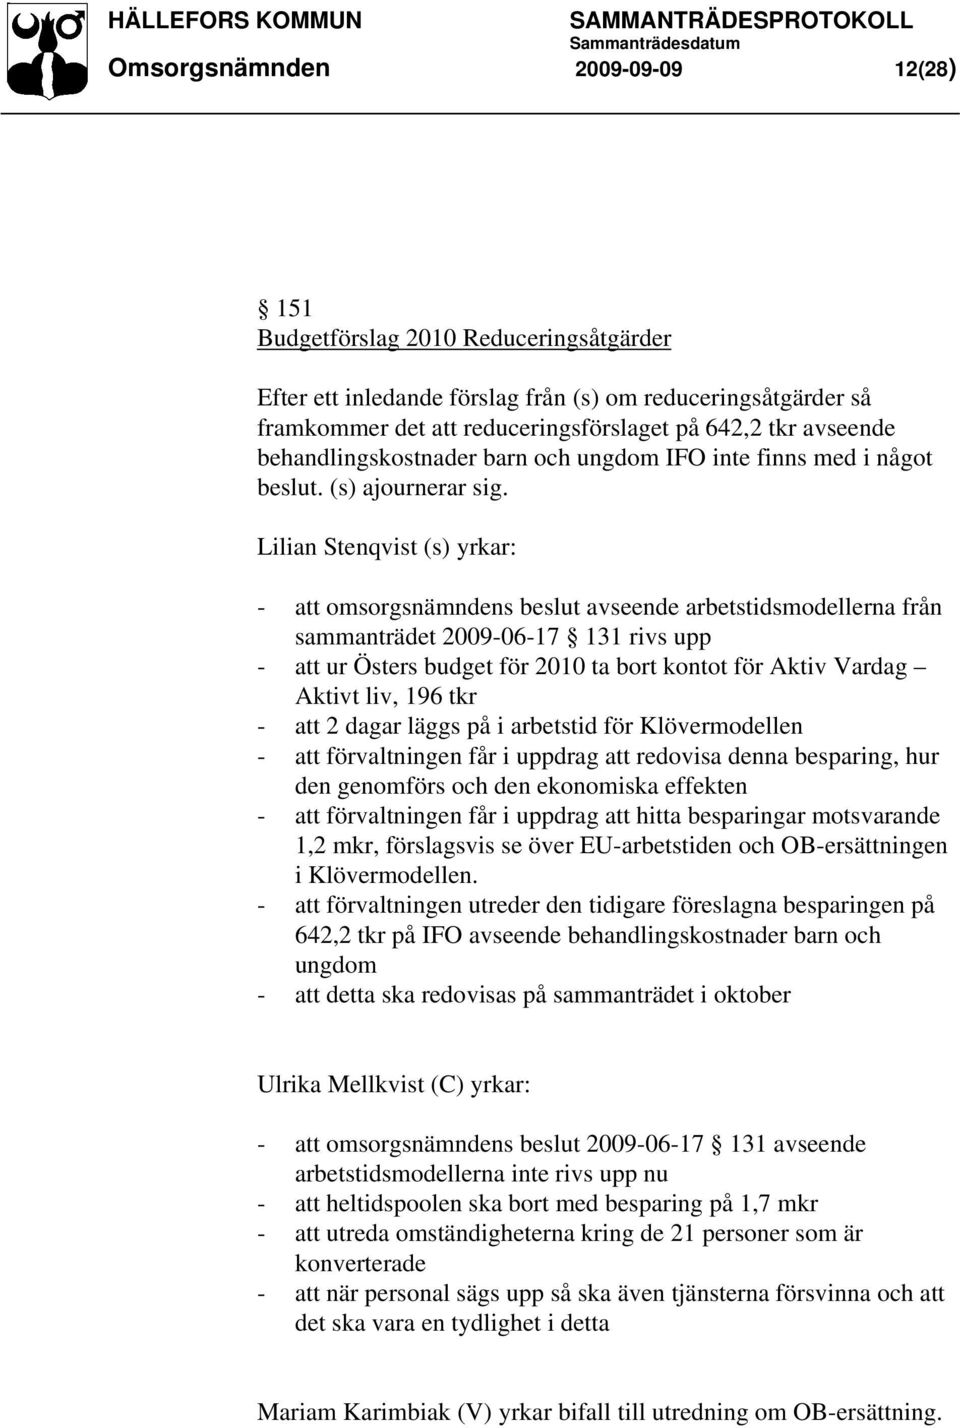 Lilian Stenqvist (s) yrkar: - att omsorgsnämndens beslut avseende arbetstidsmodellerna från sammanträdet 2009-06-17 131 rivs upp - att ur Östers budget för 2010 ta bort kontot för Aktiv Vardag Aktivt